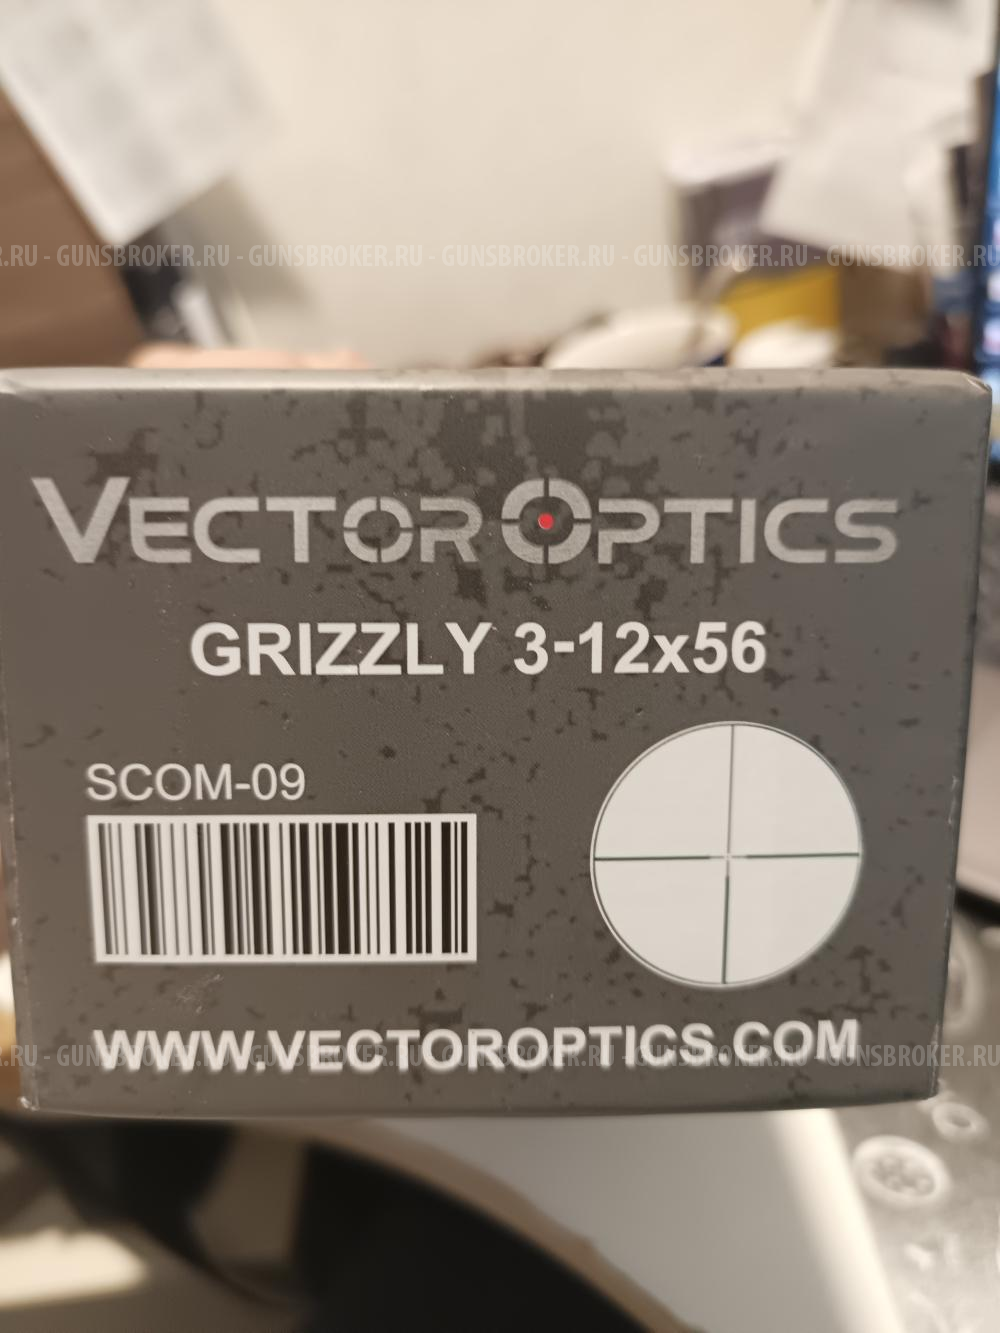 Прицел Vector Optics Grizzly 3-12x56 SFP